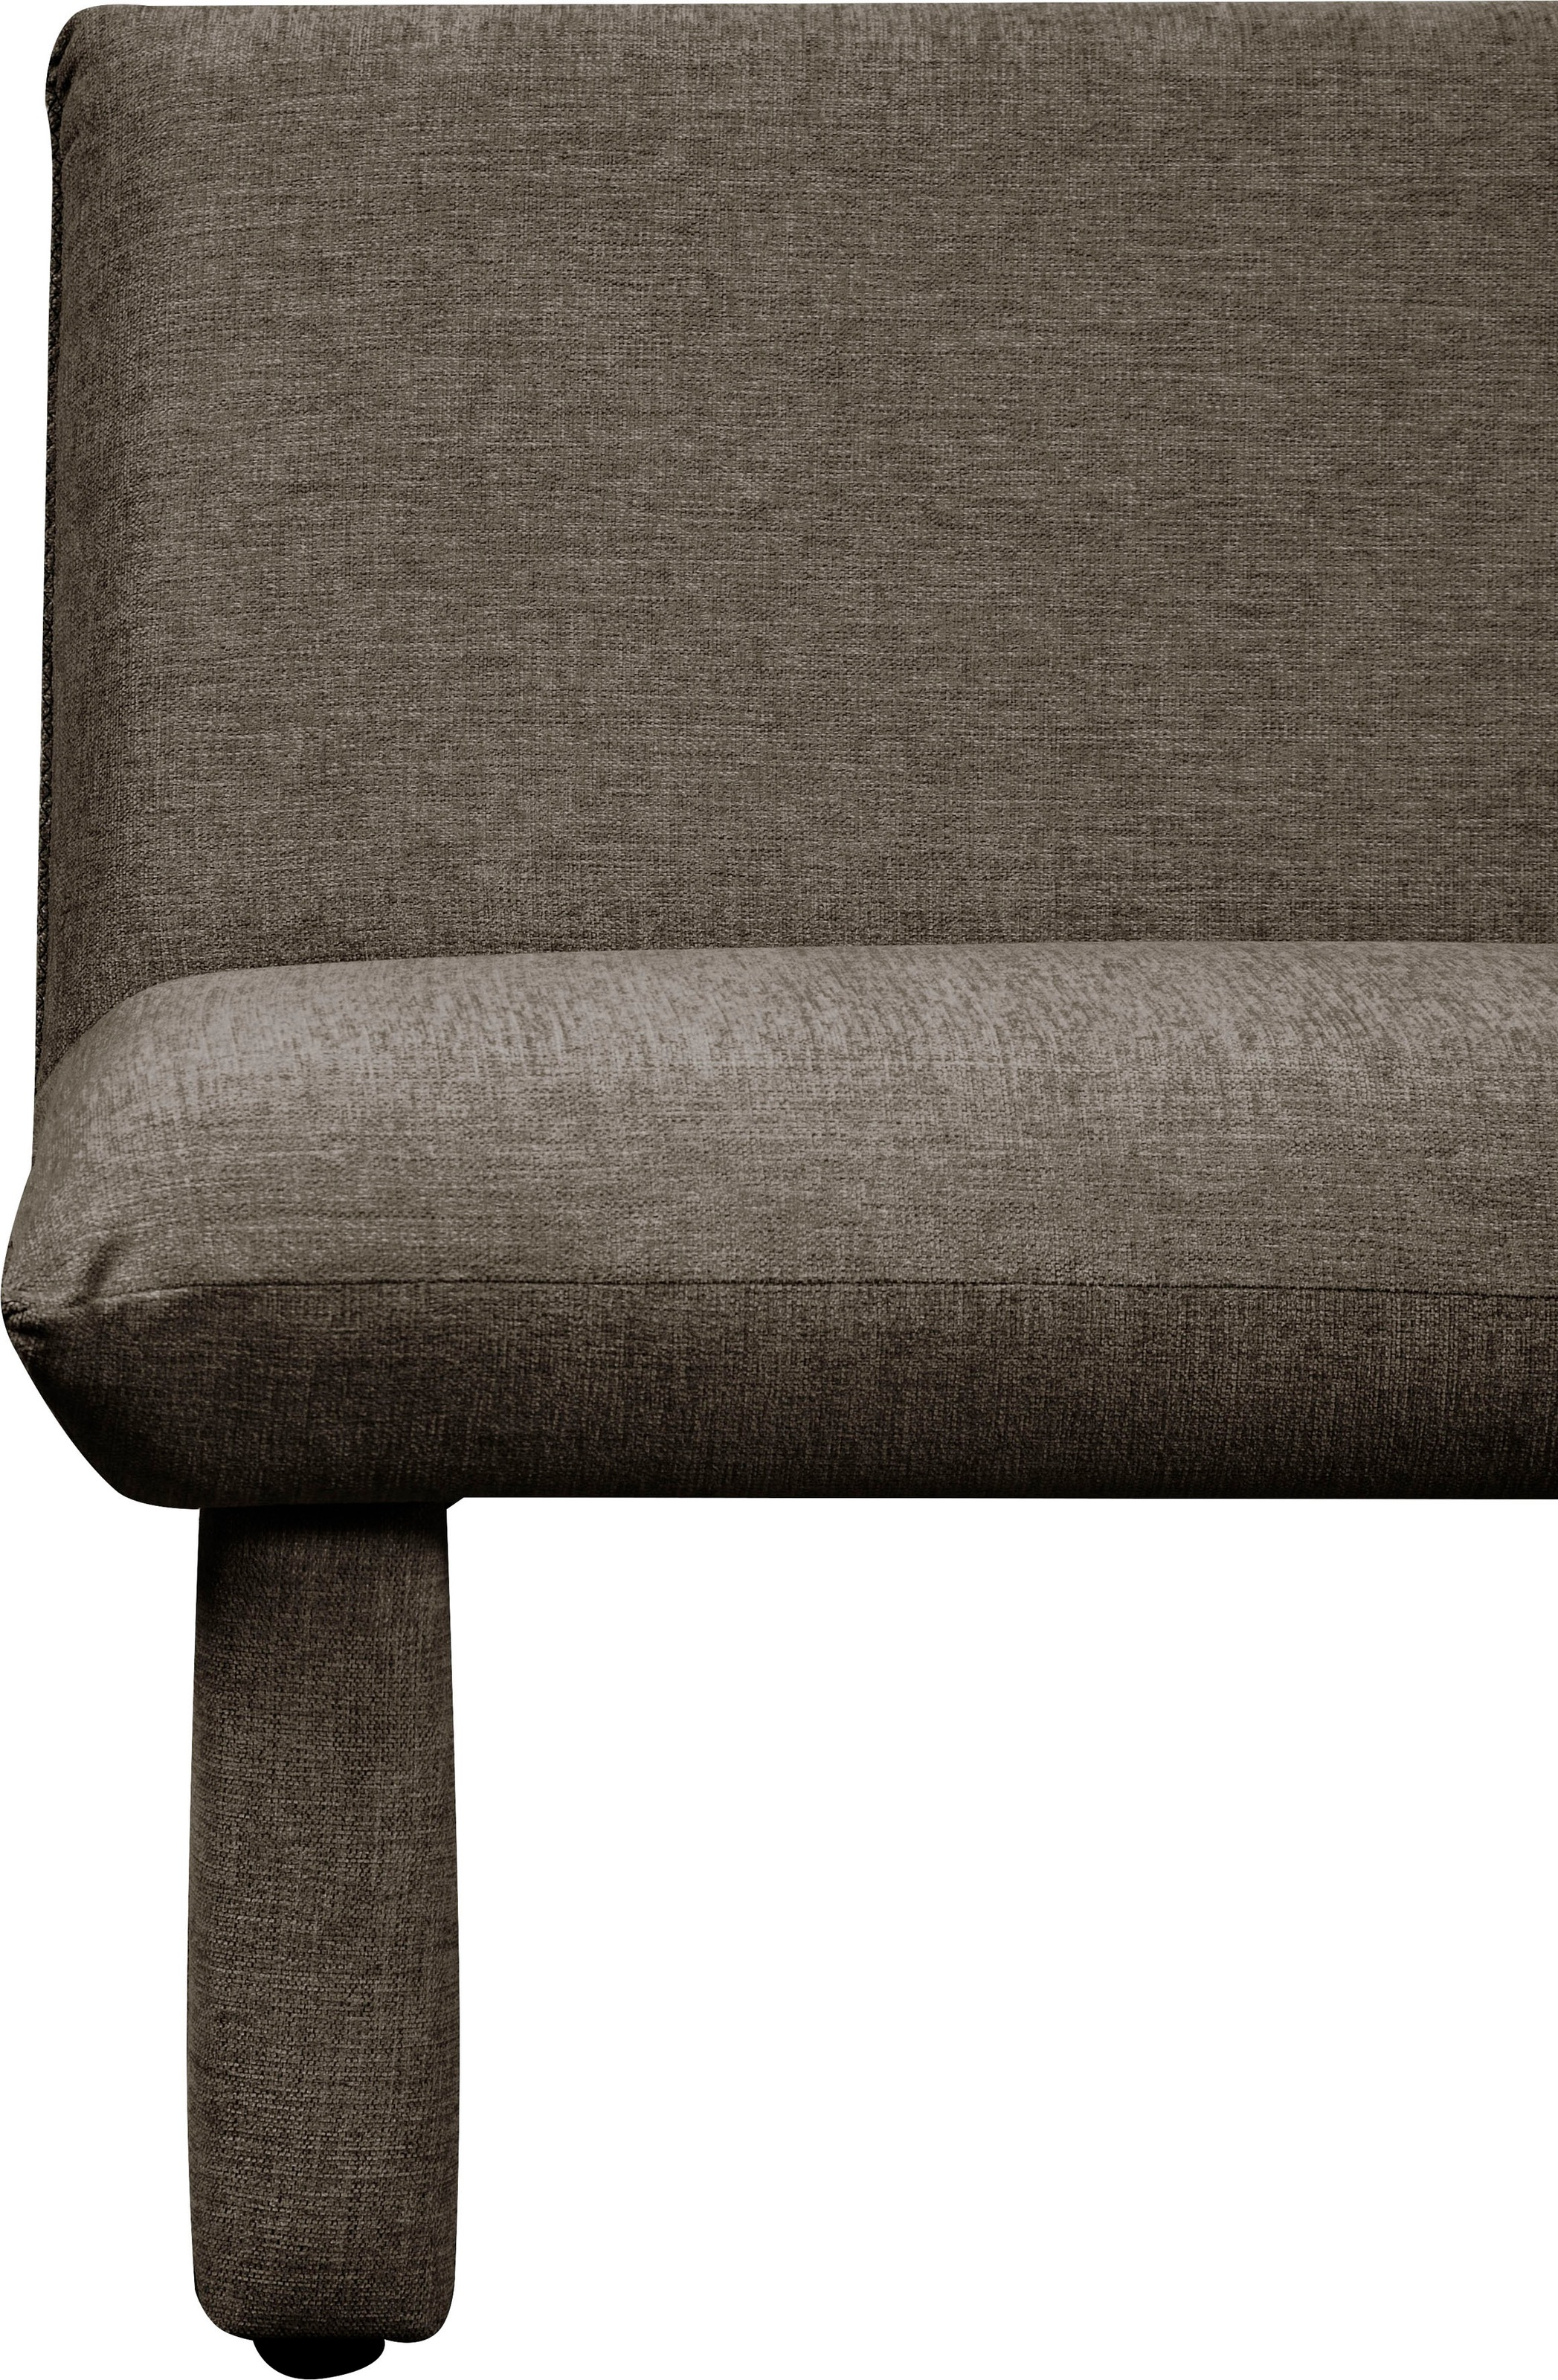 Home affaire Sitzbank »London«, Breite 169 cm, mit Wellenunterfederung im Sitz